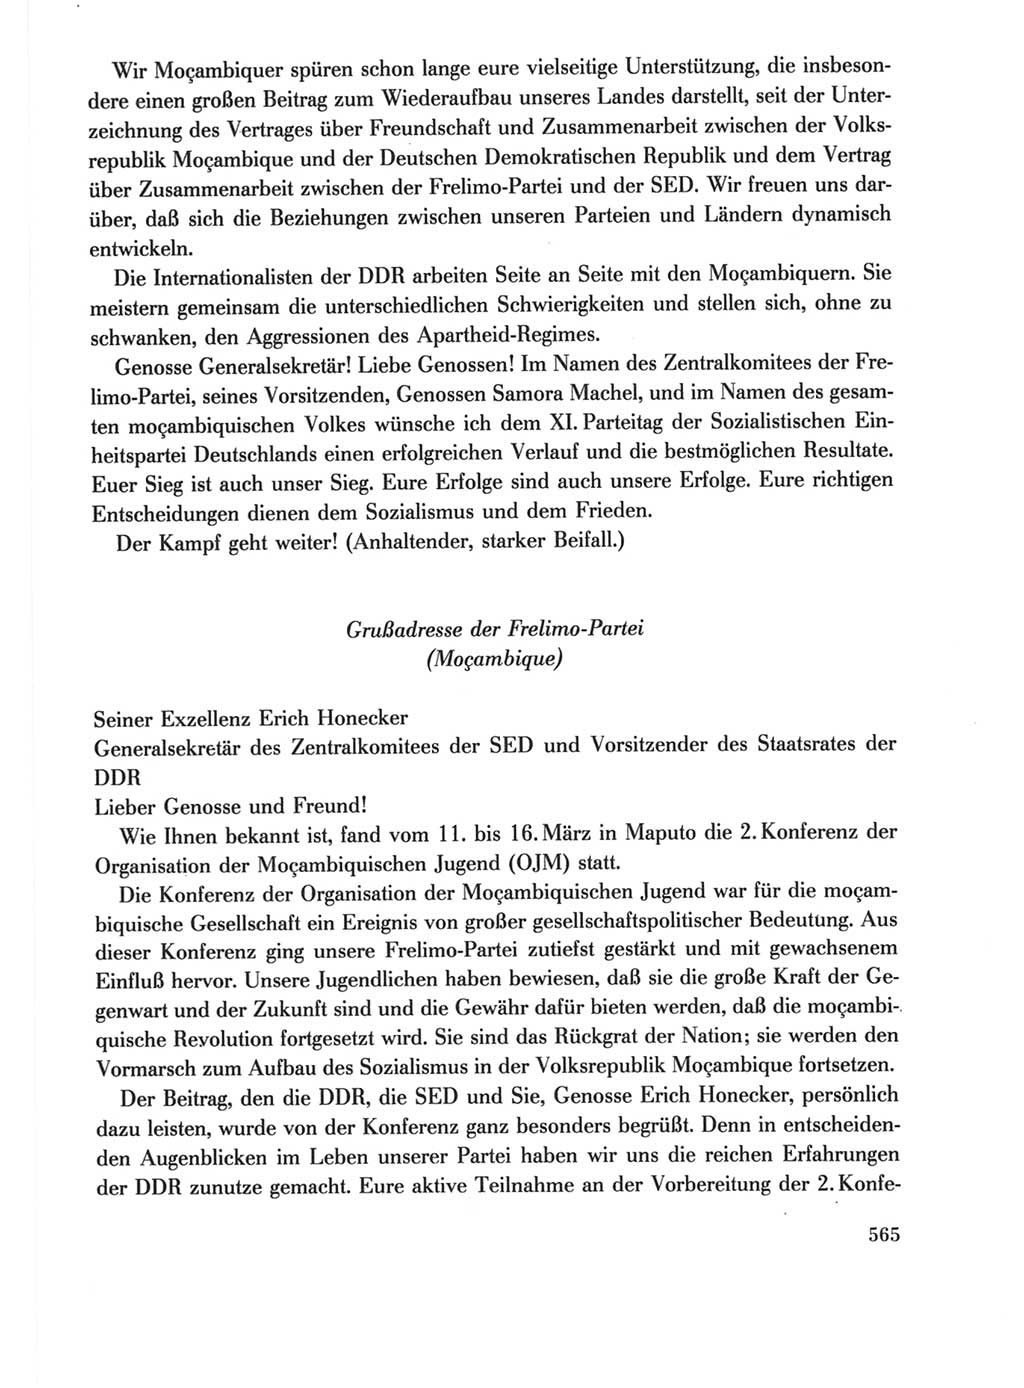 Protokoll der Verhandlungen des Ⅺ. Parteitages der Sozialistischen Einheitspartei Deutschlands (SED) [Deutsche Demokratische Republik (DDR)] 1986, Seite 565